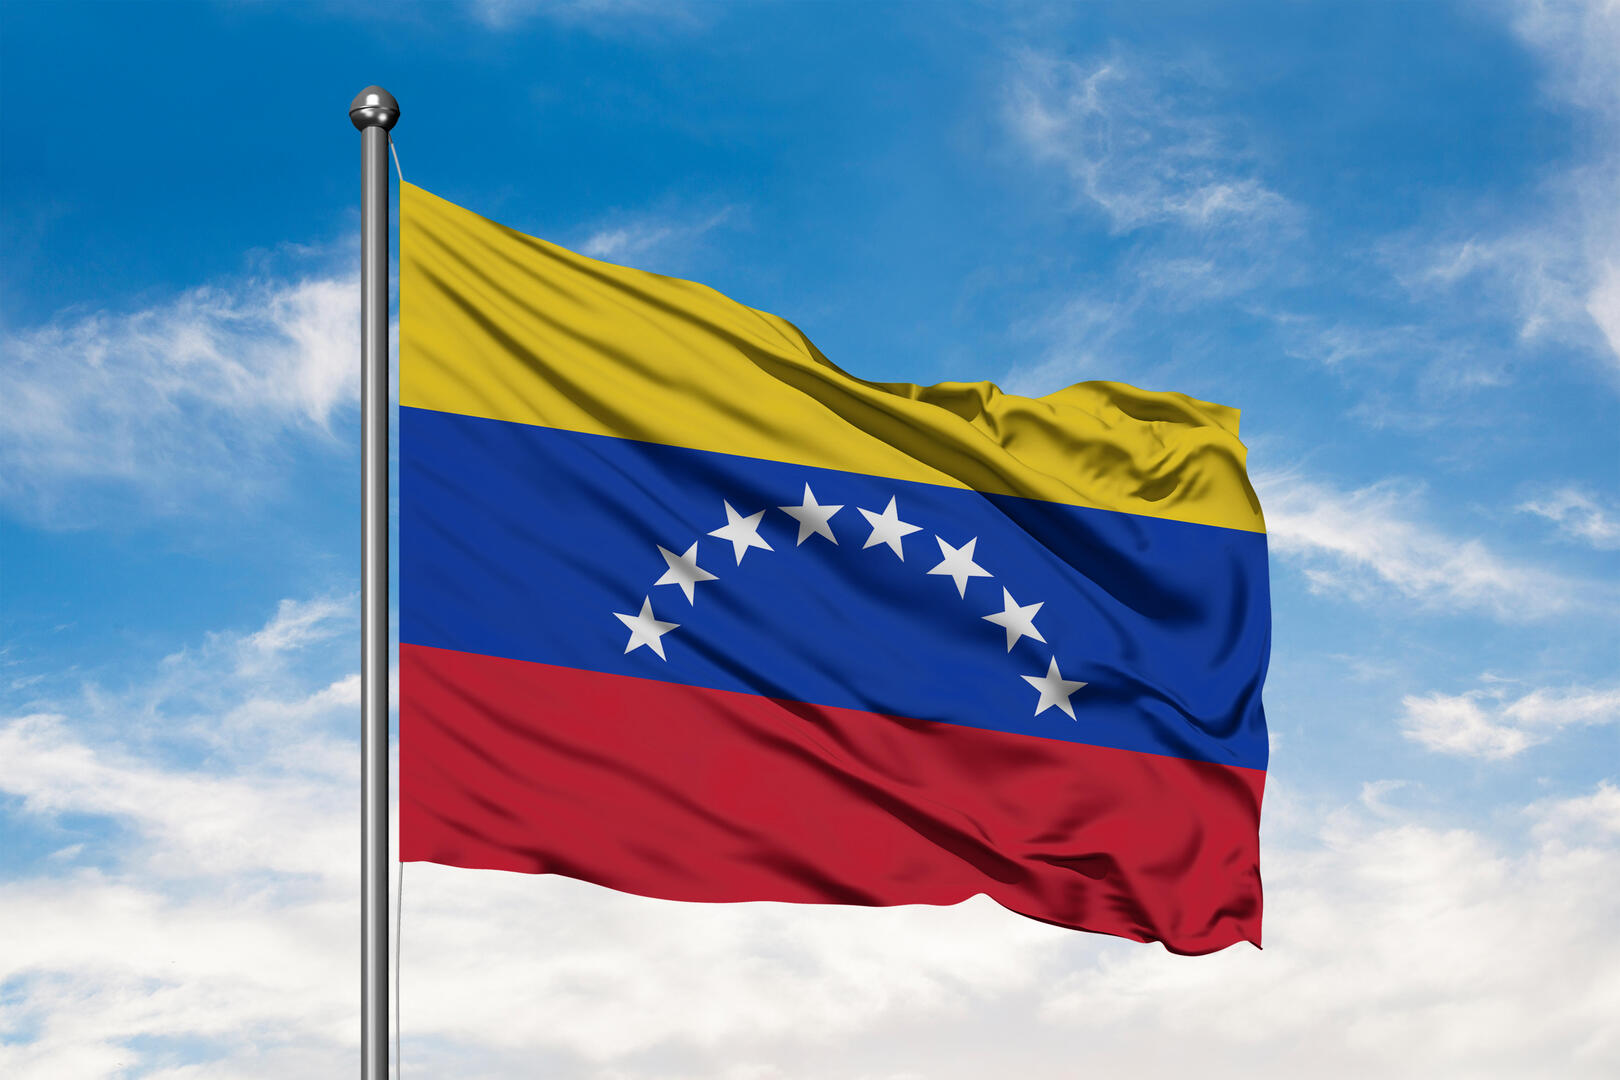 الحكومة الفنزويلية تتهم الولايات المتحدة بعدم الالتزام بأجندة رفع العقوبات